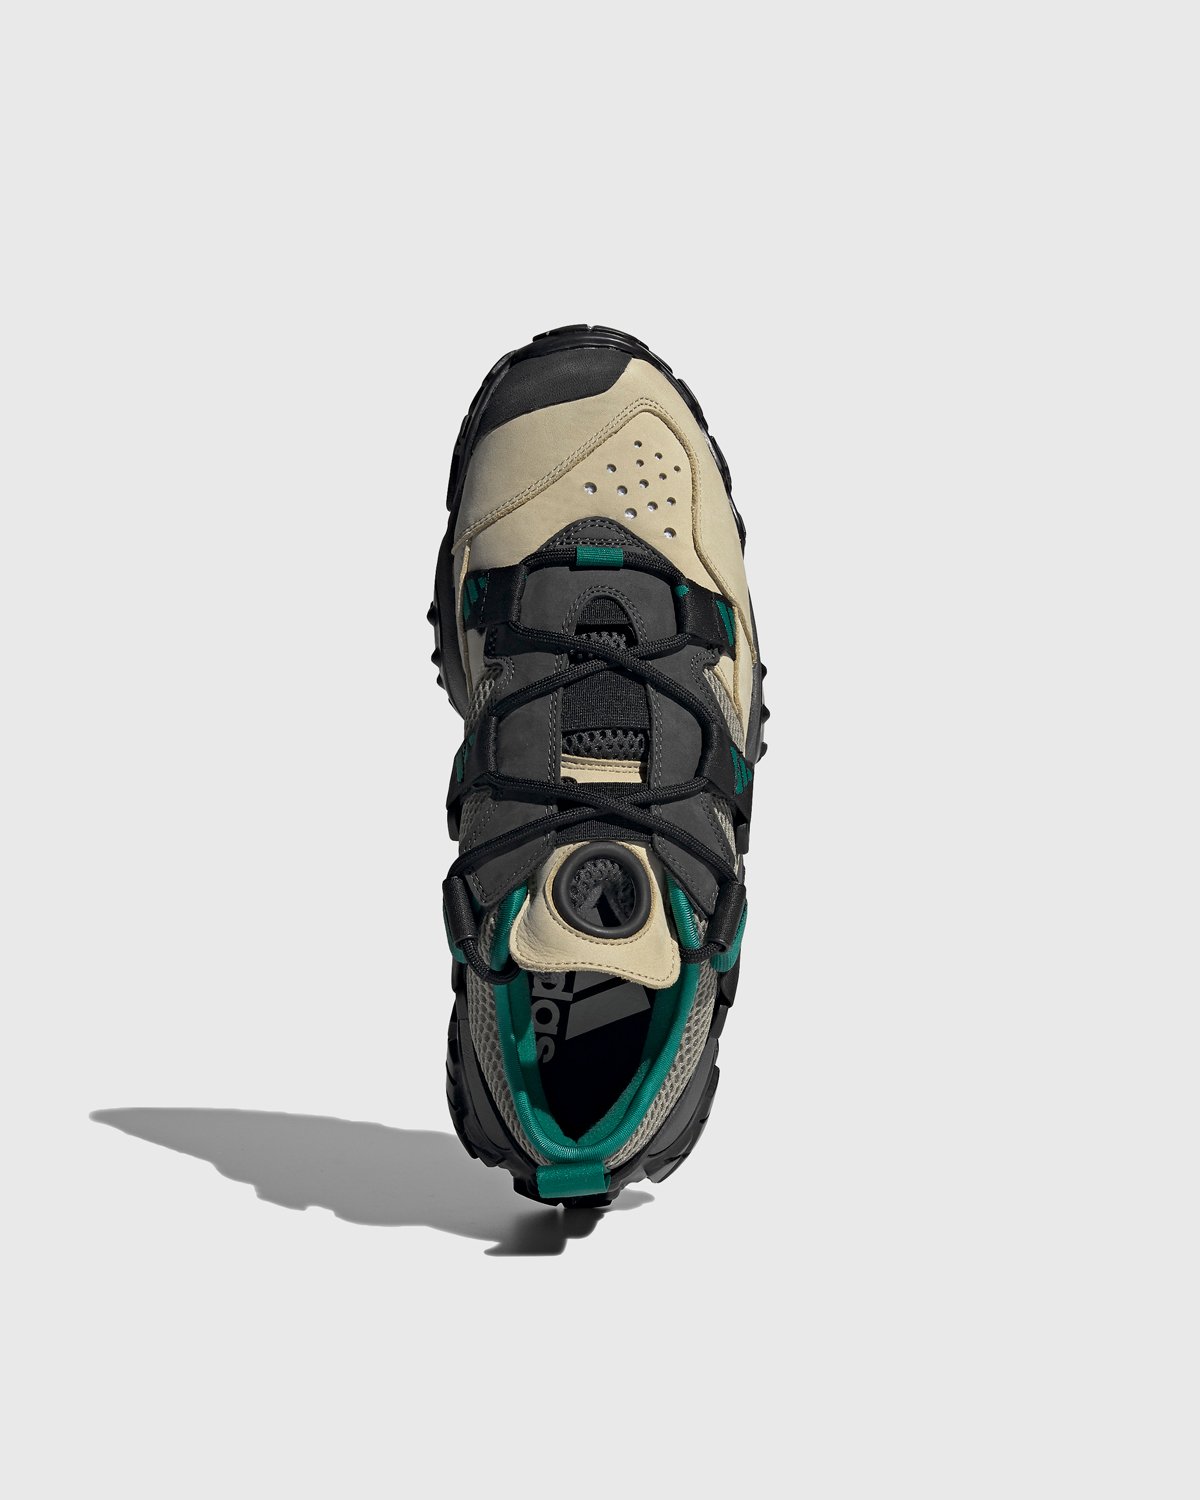 Adidas - FYW XTA Sand/Black/Green - Footwear - Multi - Image 3